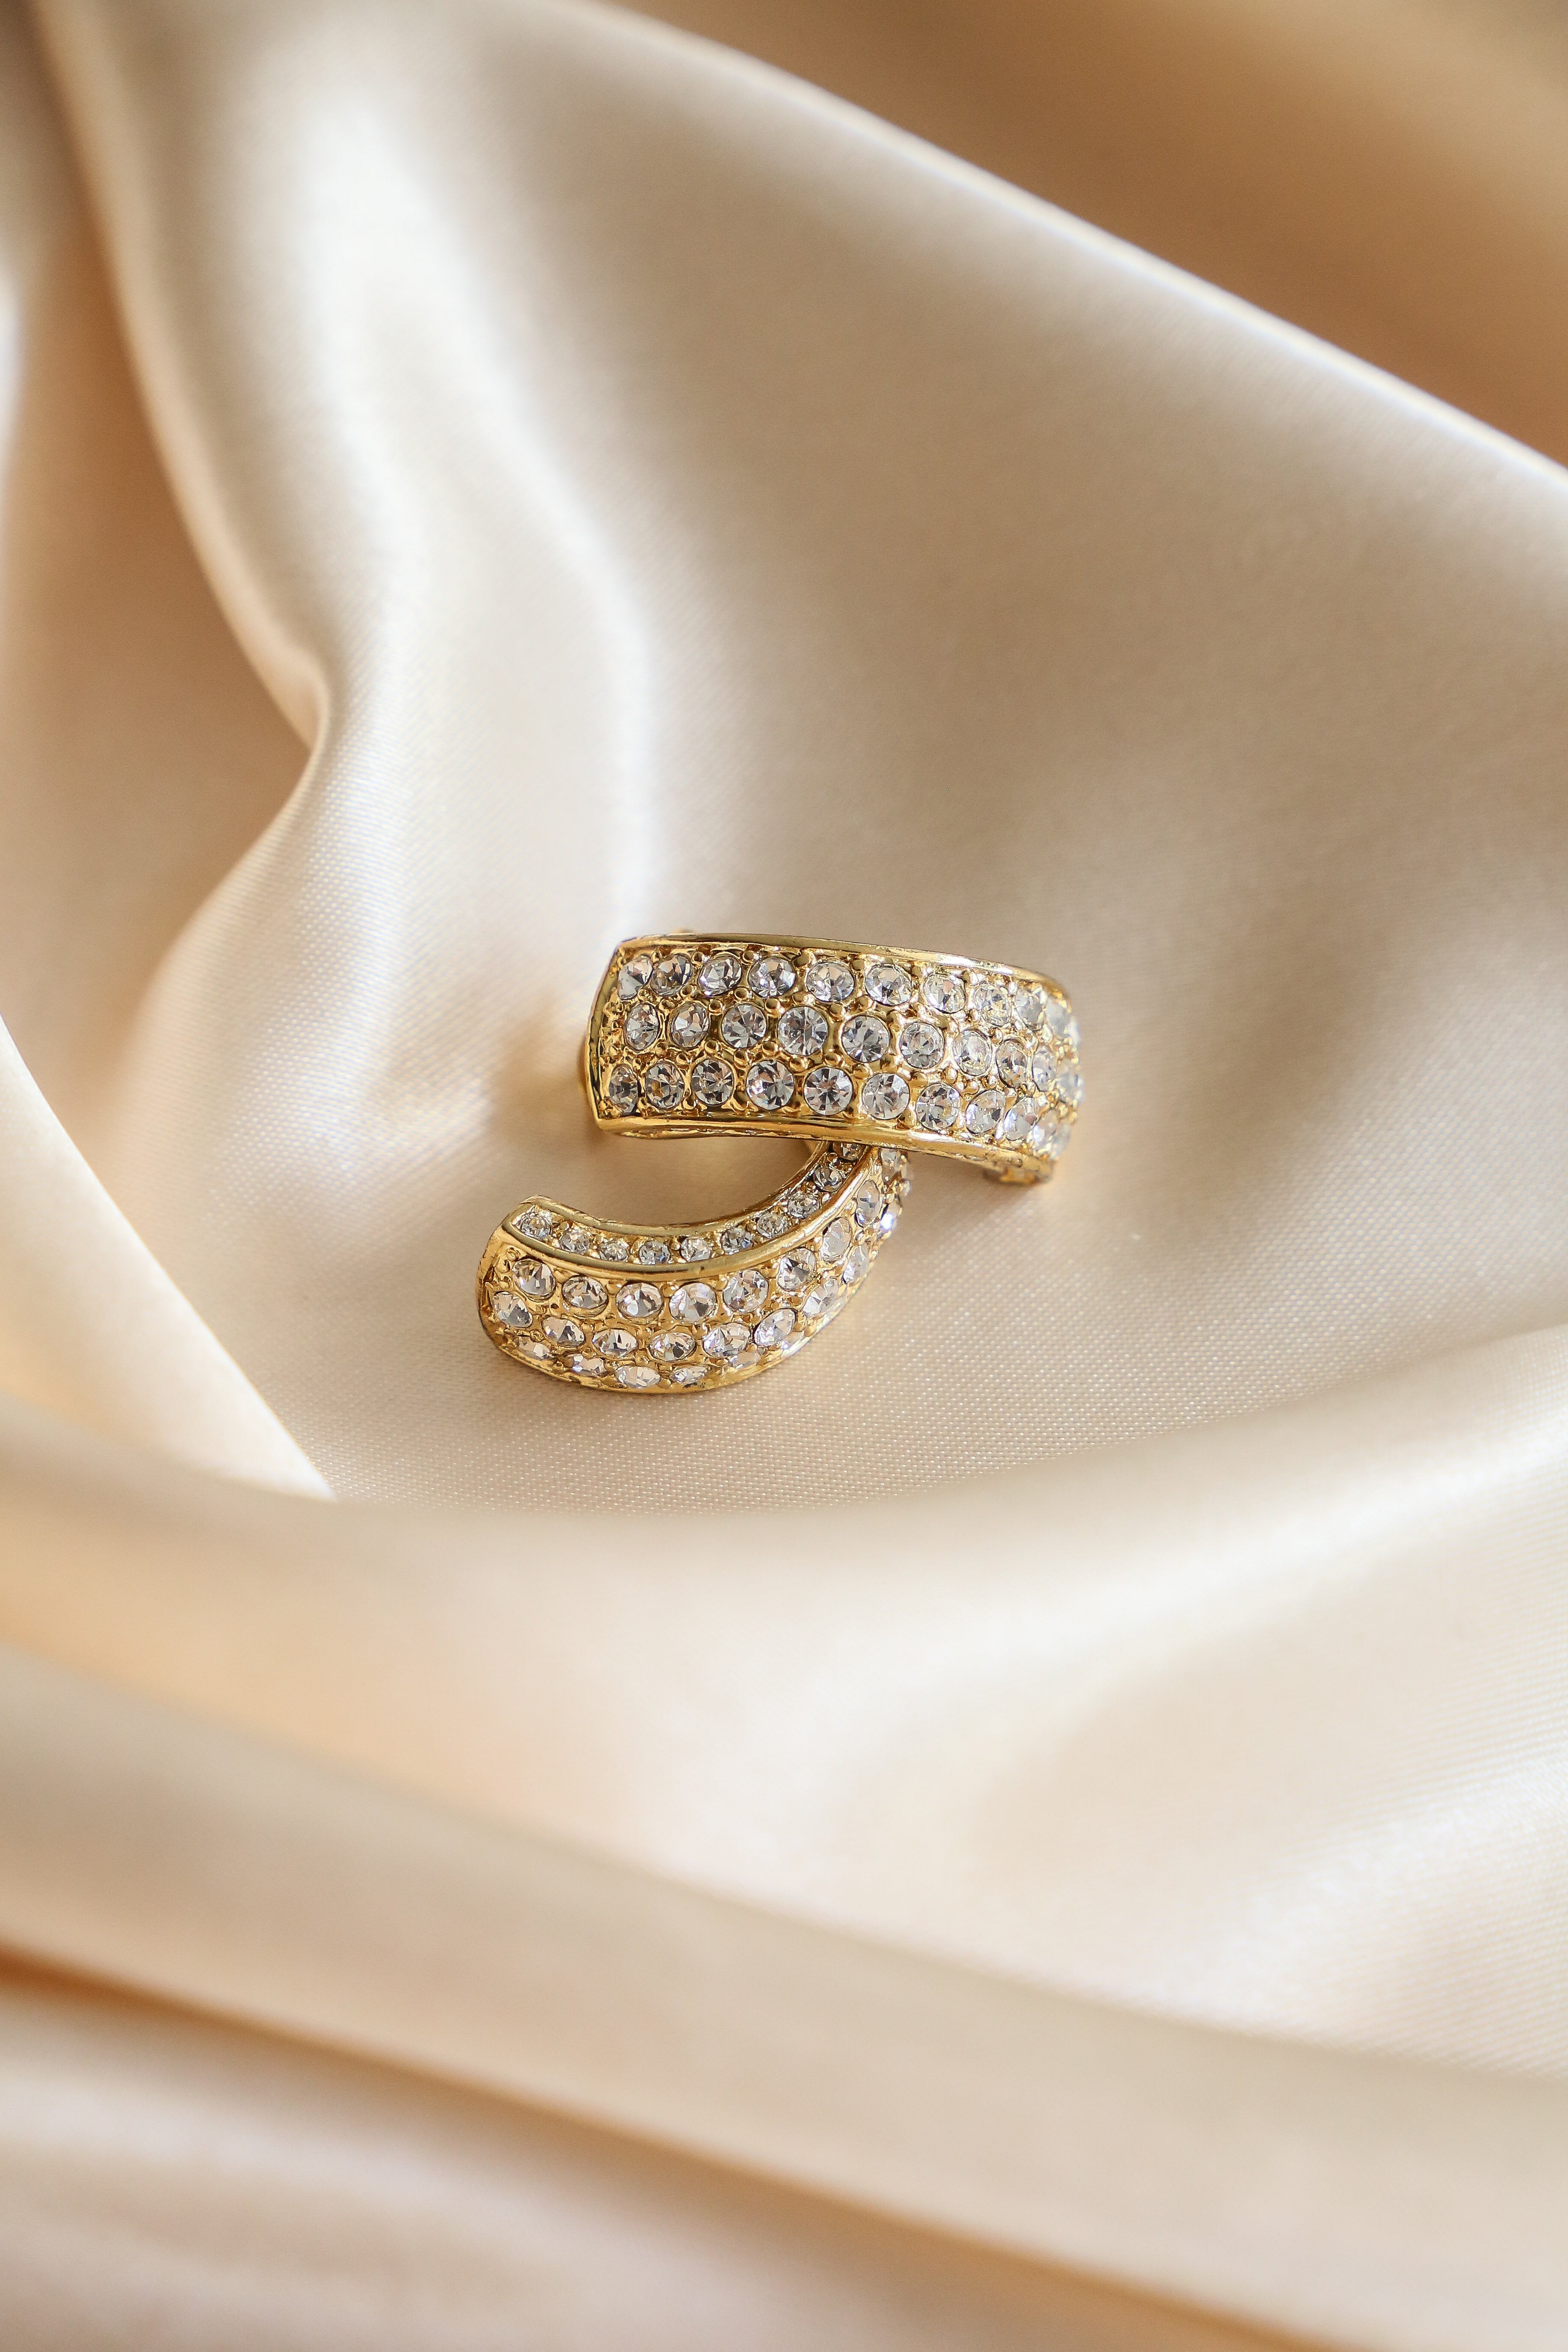 Sun Hoop Earrings - Boutique Minimaliste has waterproof, durable, elegant and vintage inspired jewelry